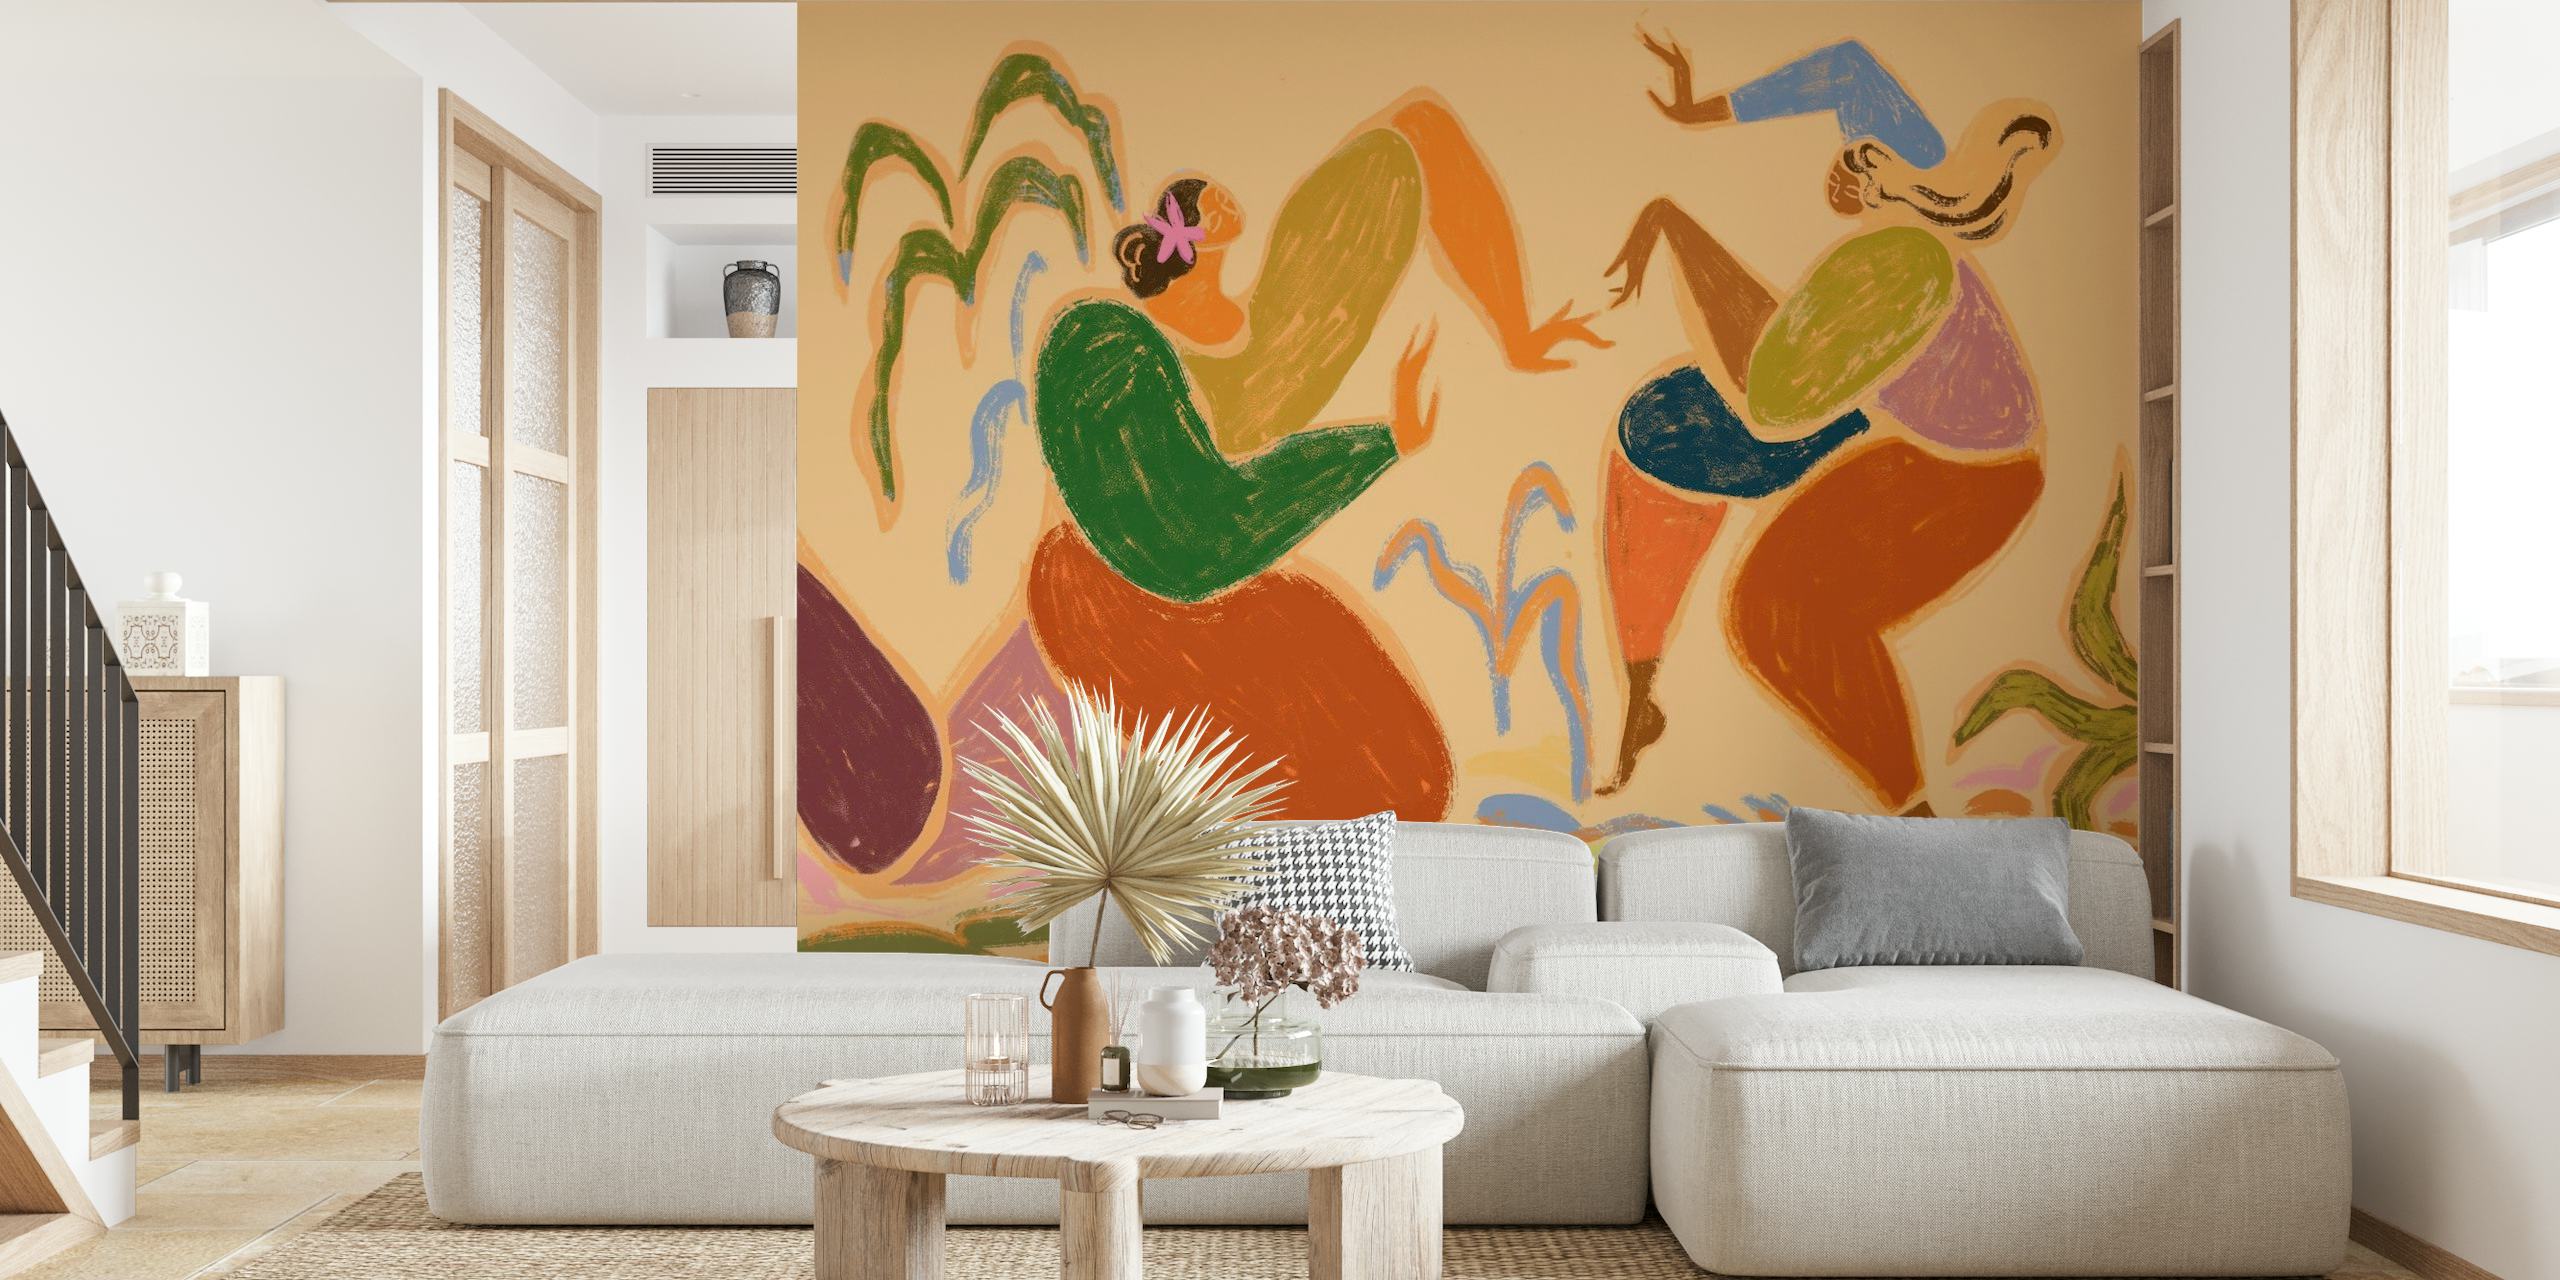 Abstrakt vægmaleri med dansetema med jordfarver, der viser rytmiske figurer i bevægelse